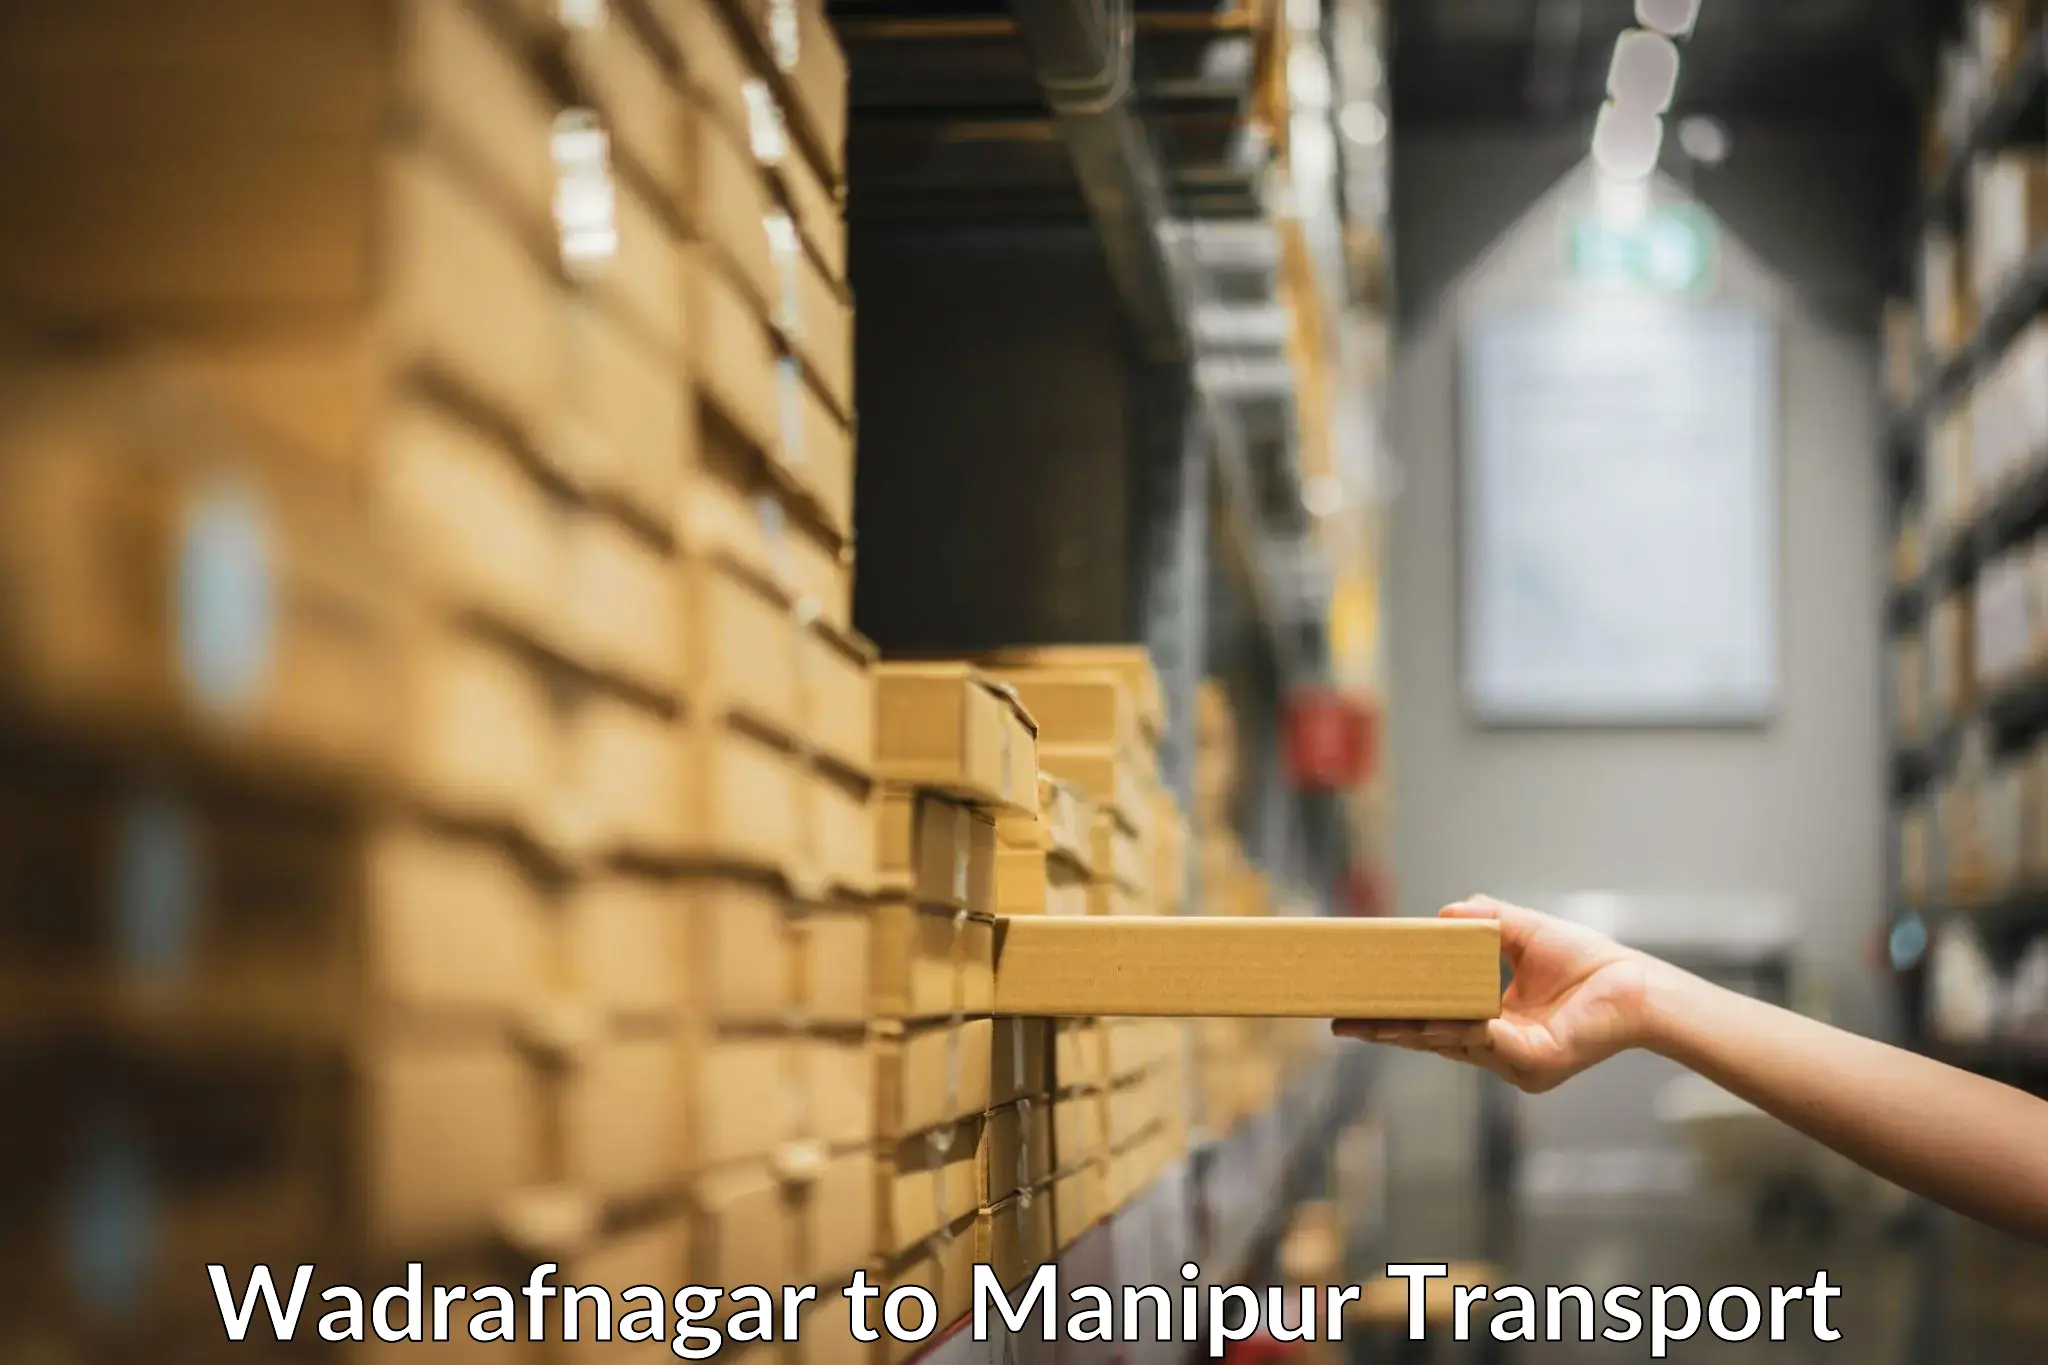 Vehicle parcel service Wadrafnagar to Imphal